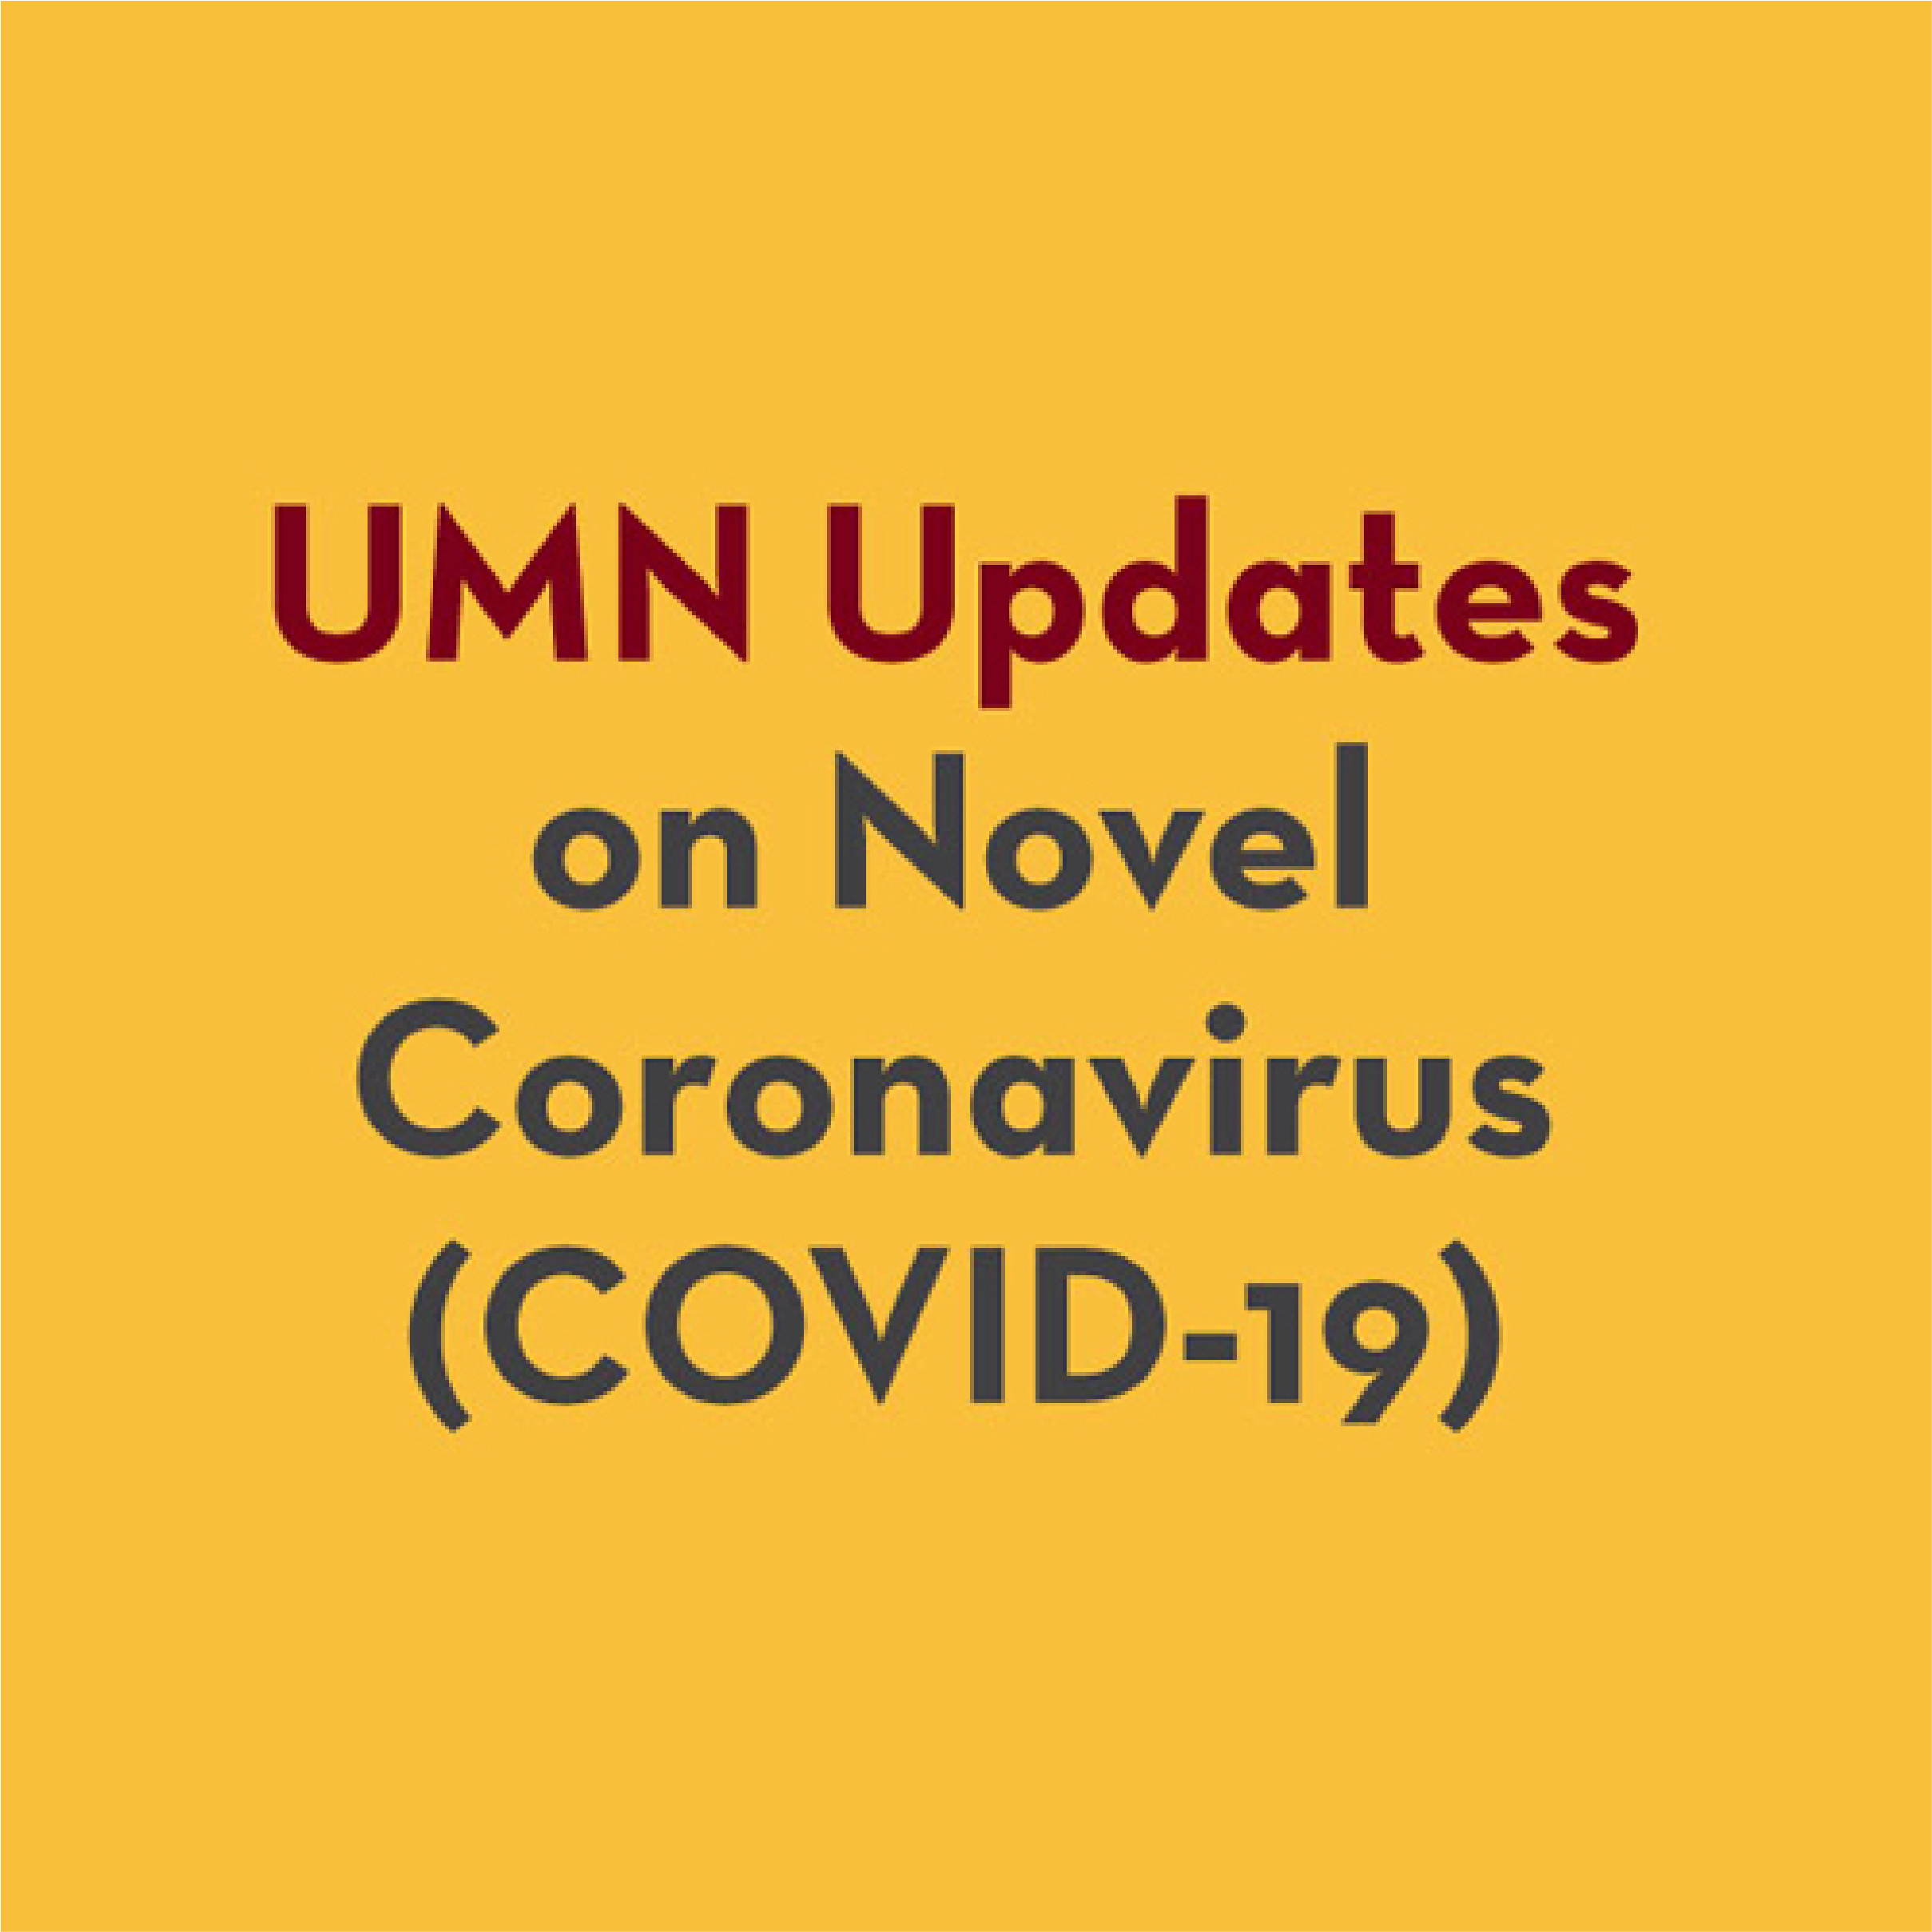 umn updates on novel coronavirus